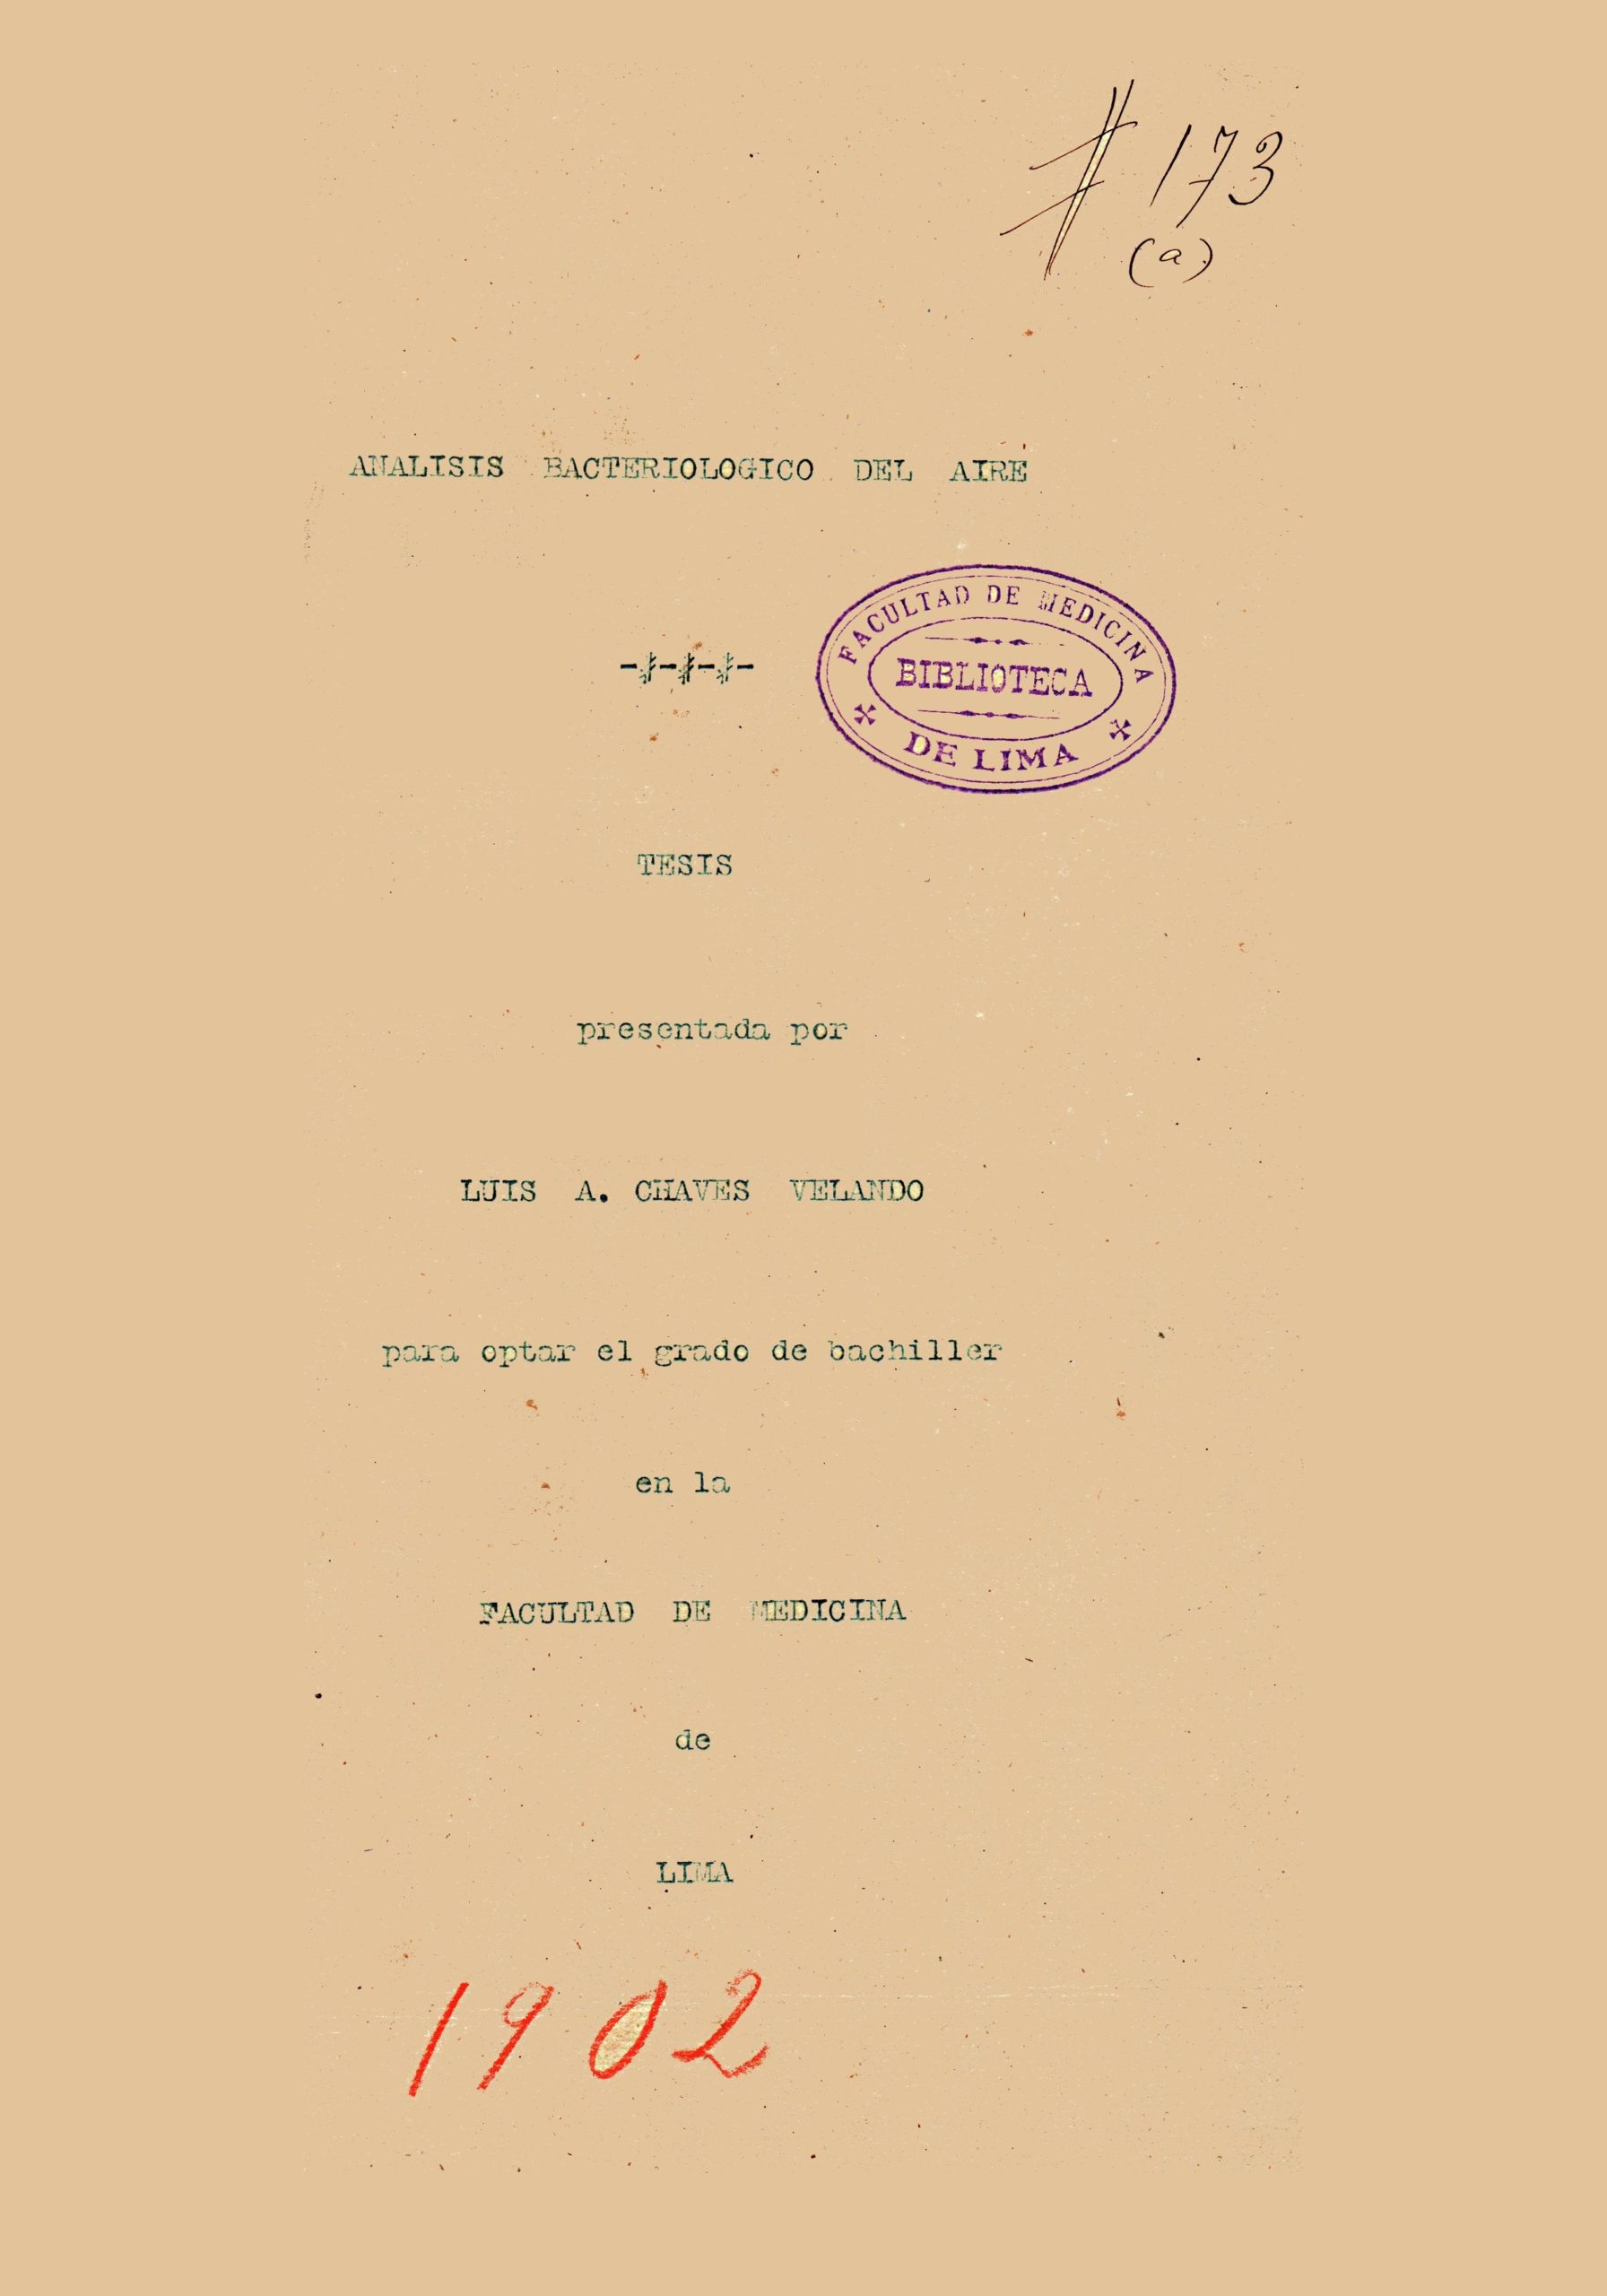 Analisis bacteriologico del aire_Luis Chaves Velando_1902